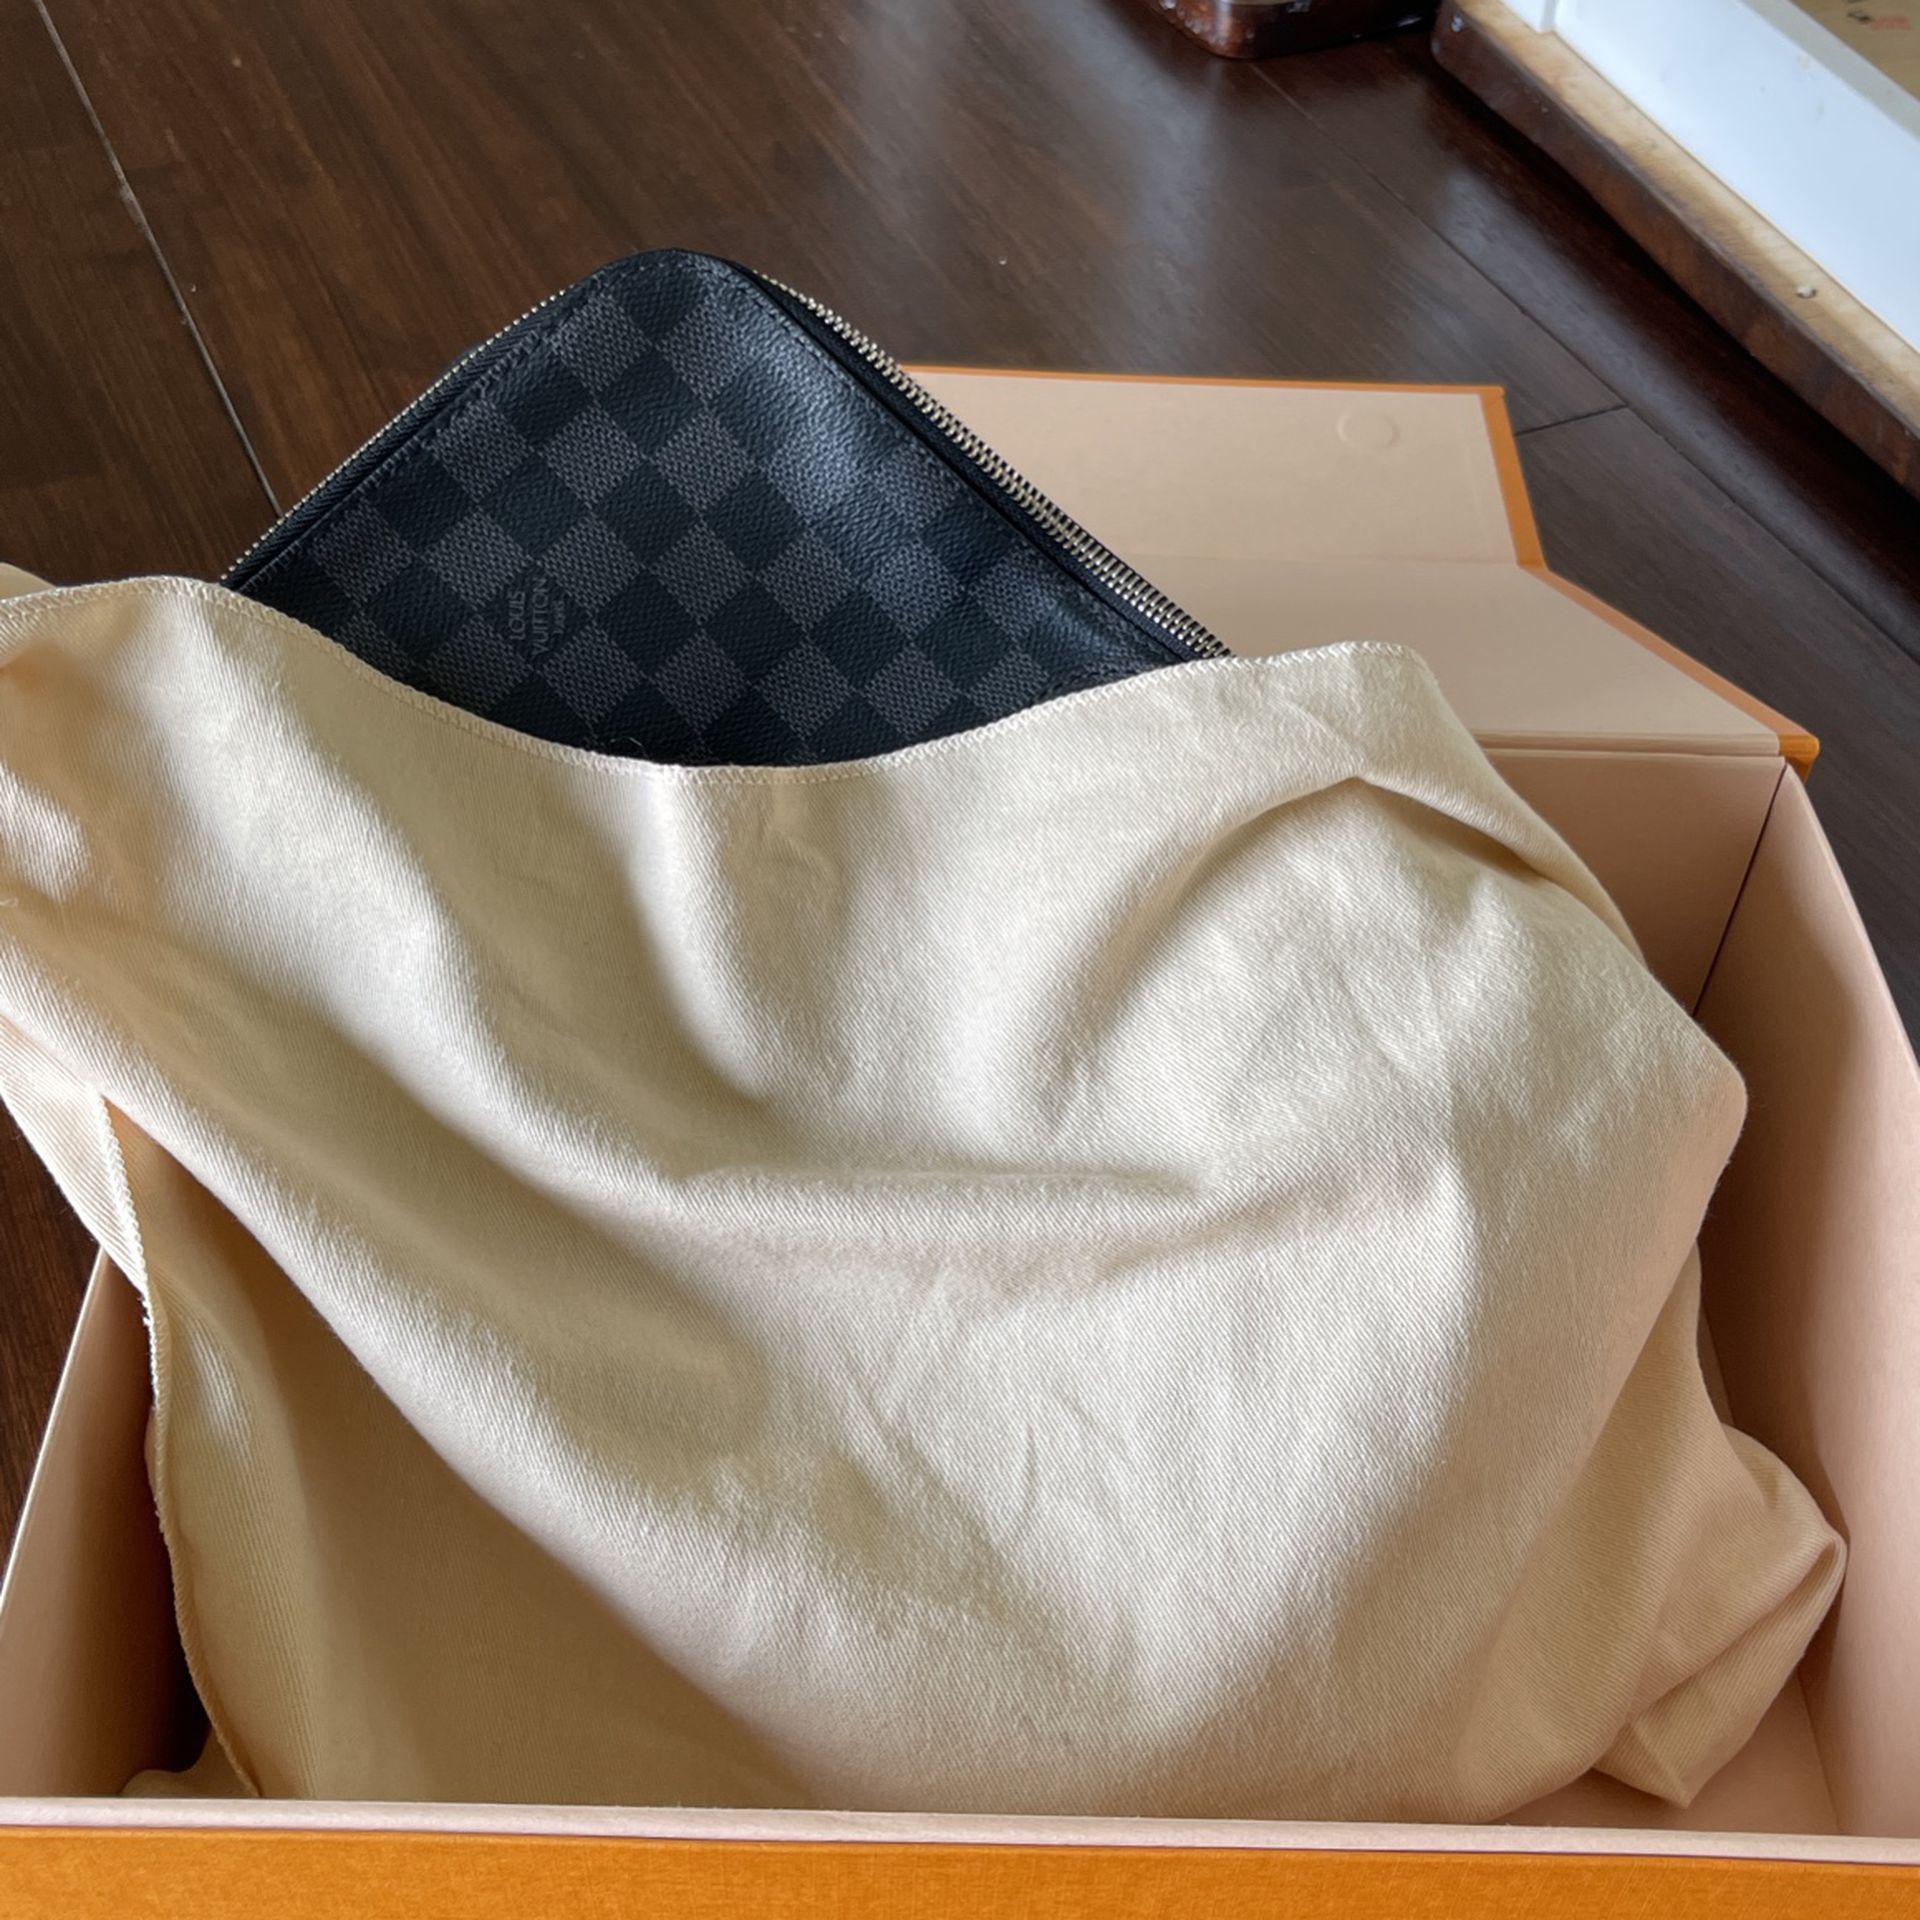 Authentic Louis Vuitton Vintage Bag for Sale in Bonita, CA - OfferUp